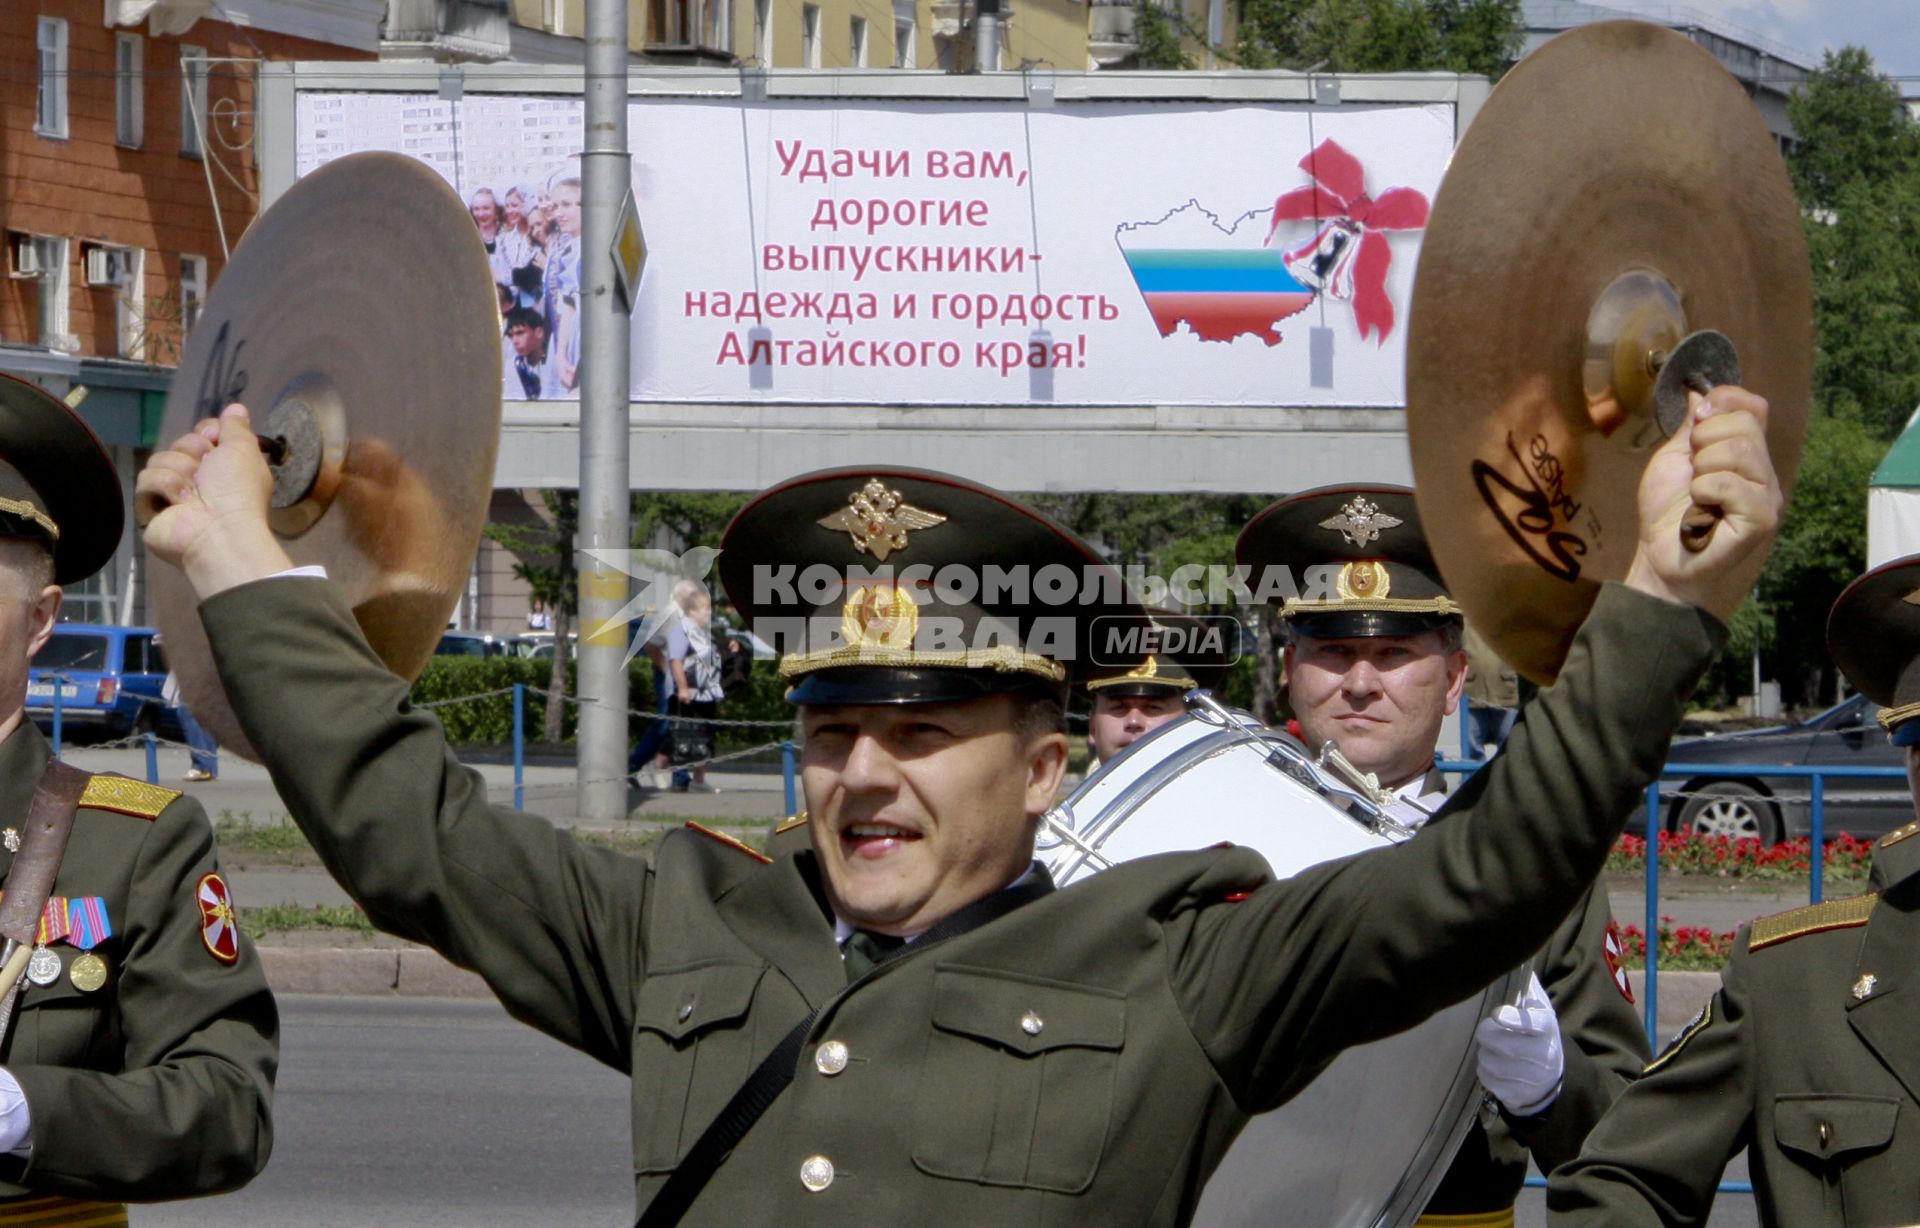 Военный оркестр играет музыку на улице города, сзади плакат с текстом: `Удачи вам, дорогие выпускники - надежда и гордость Алтайского края!`